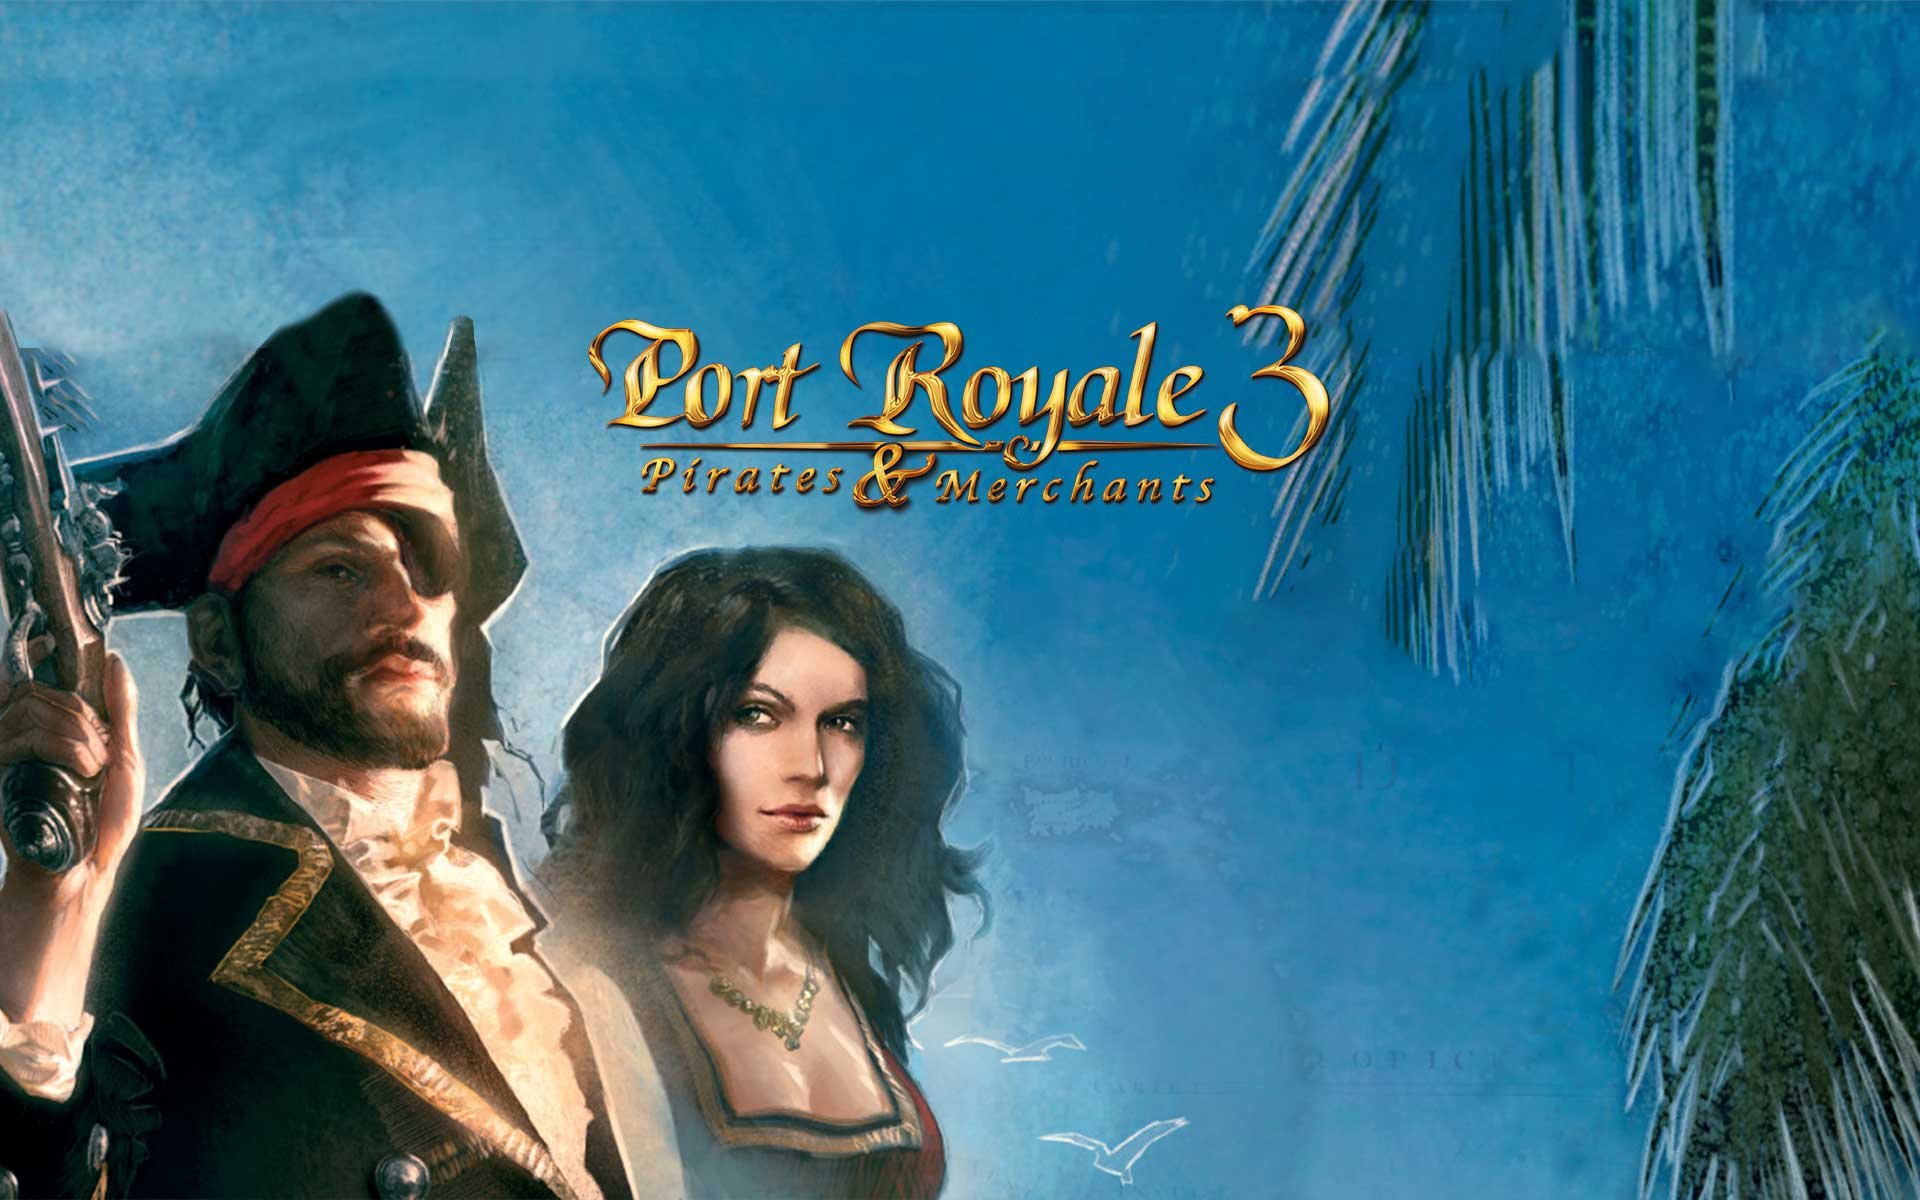 Compre Port Royale a partir de R$ 27.99